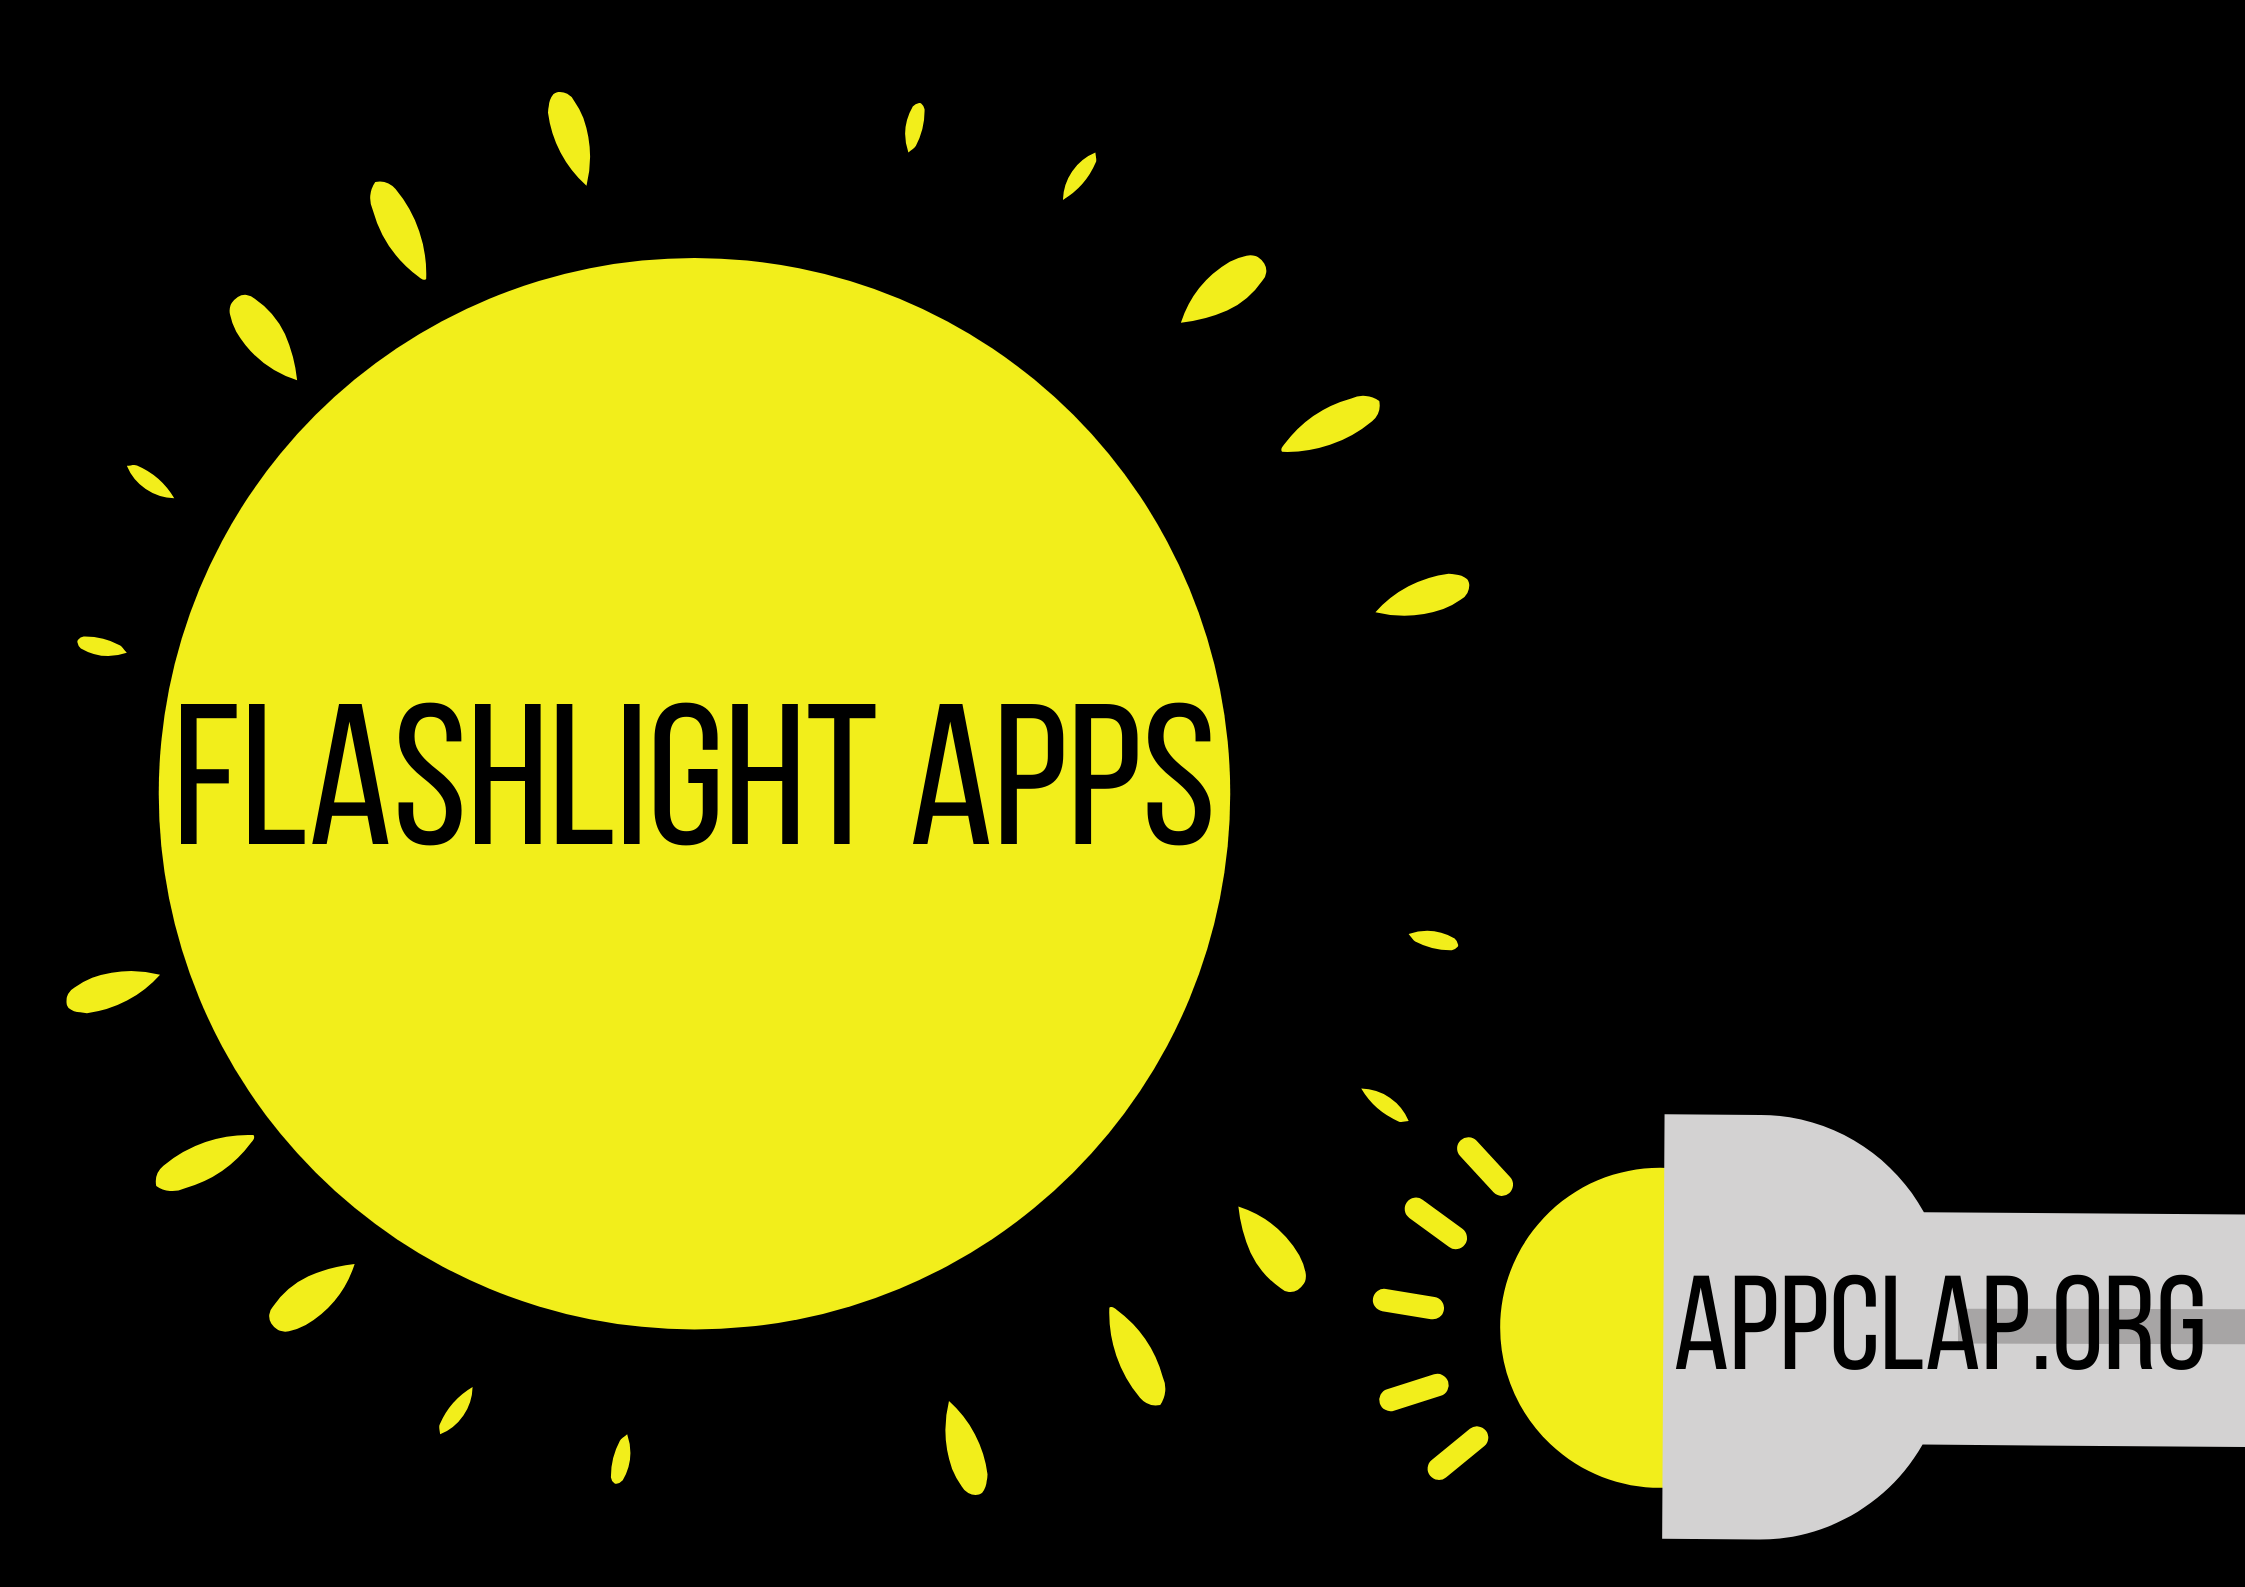 Flashlight Apps